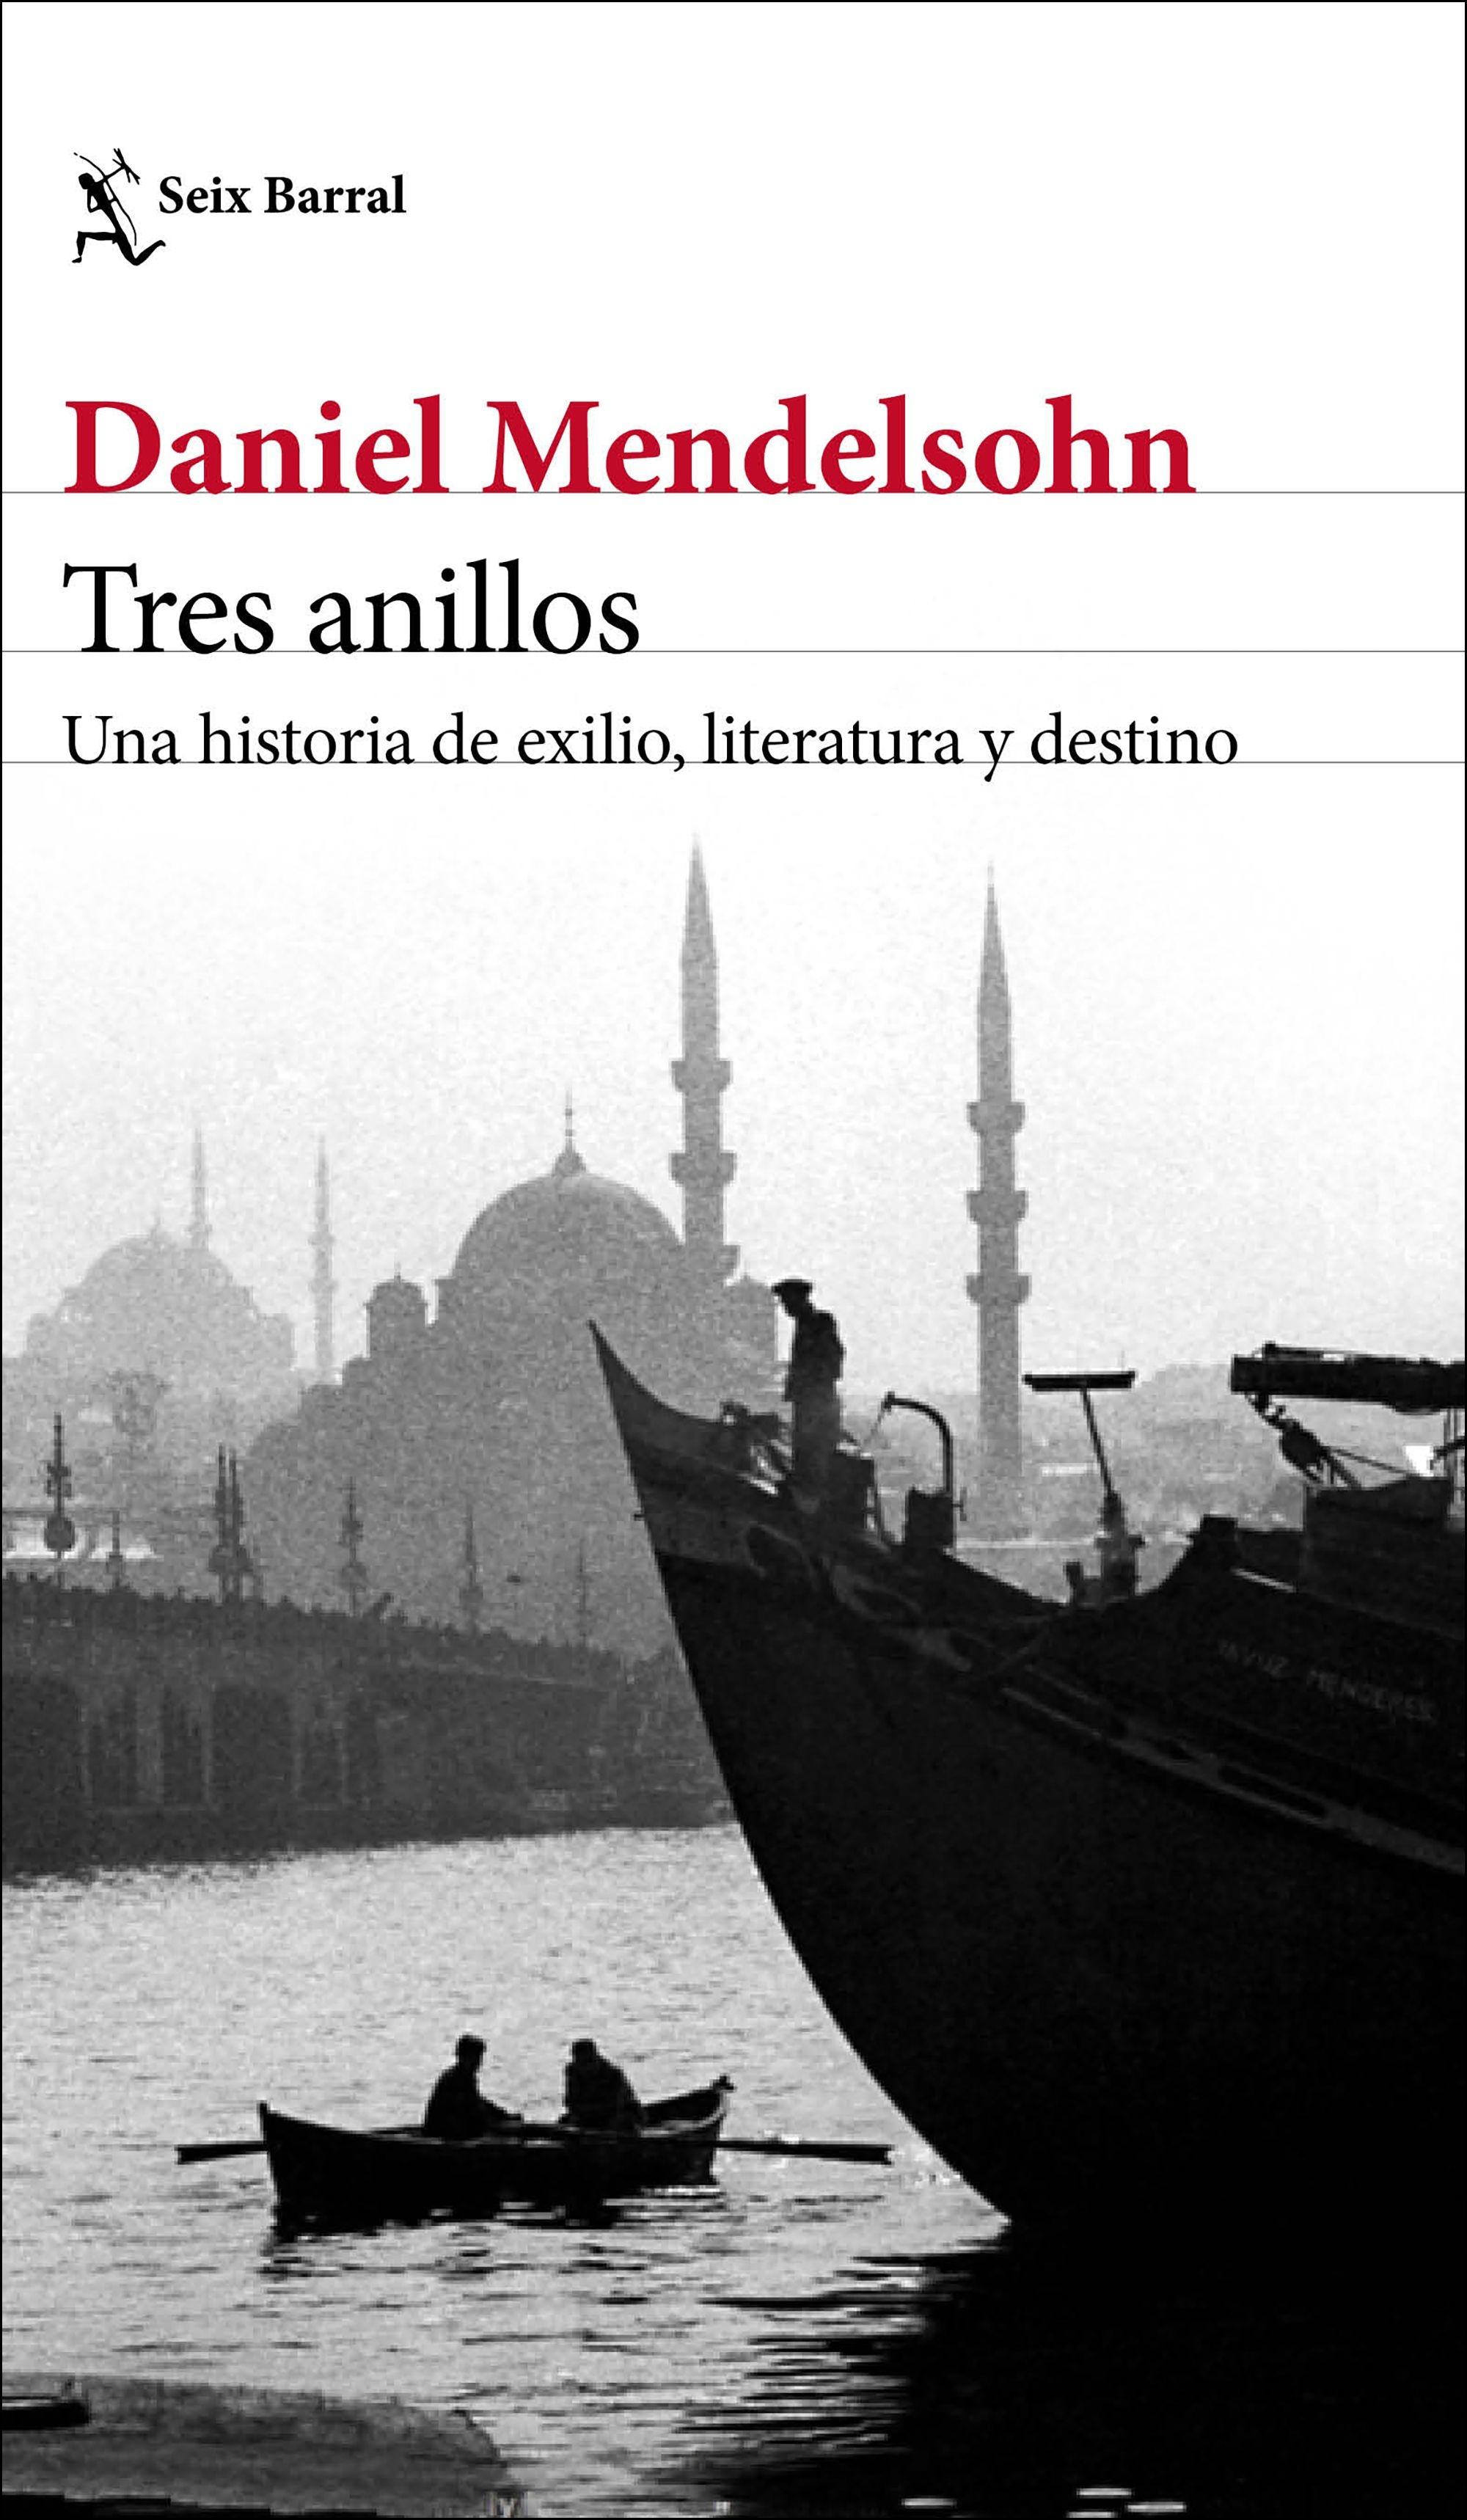 Tres anillos "Una historia de exilio, literatura y destino"